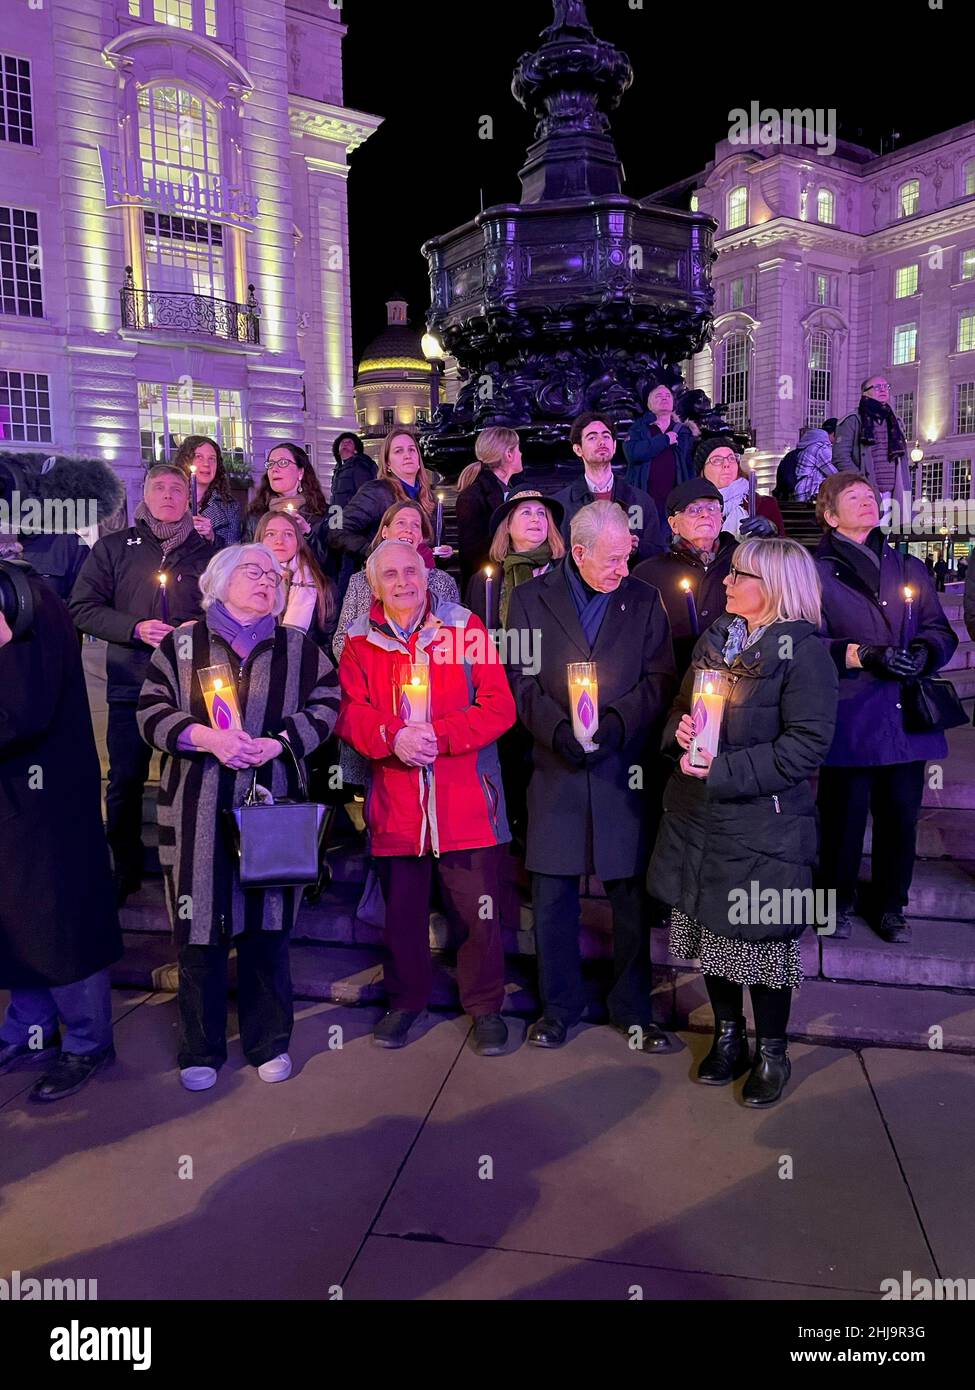 Les survivants de l'Holocauste se sont réunis à Piccadilly Circus, dans le centre de Londres, pour allumer des bougies et se souvenir des victimes du génocide lors du jour commémoratif de l'Holocauste, les bâtiments environnants étant éclairés en violet.Date de la photo: Jeudi 27 janvier 2022. Banque D'Images